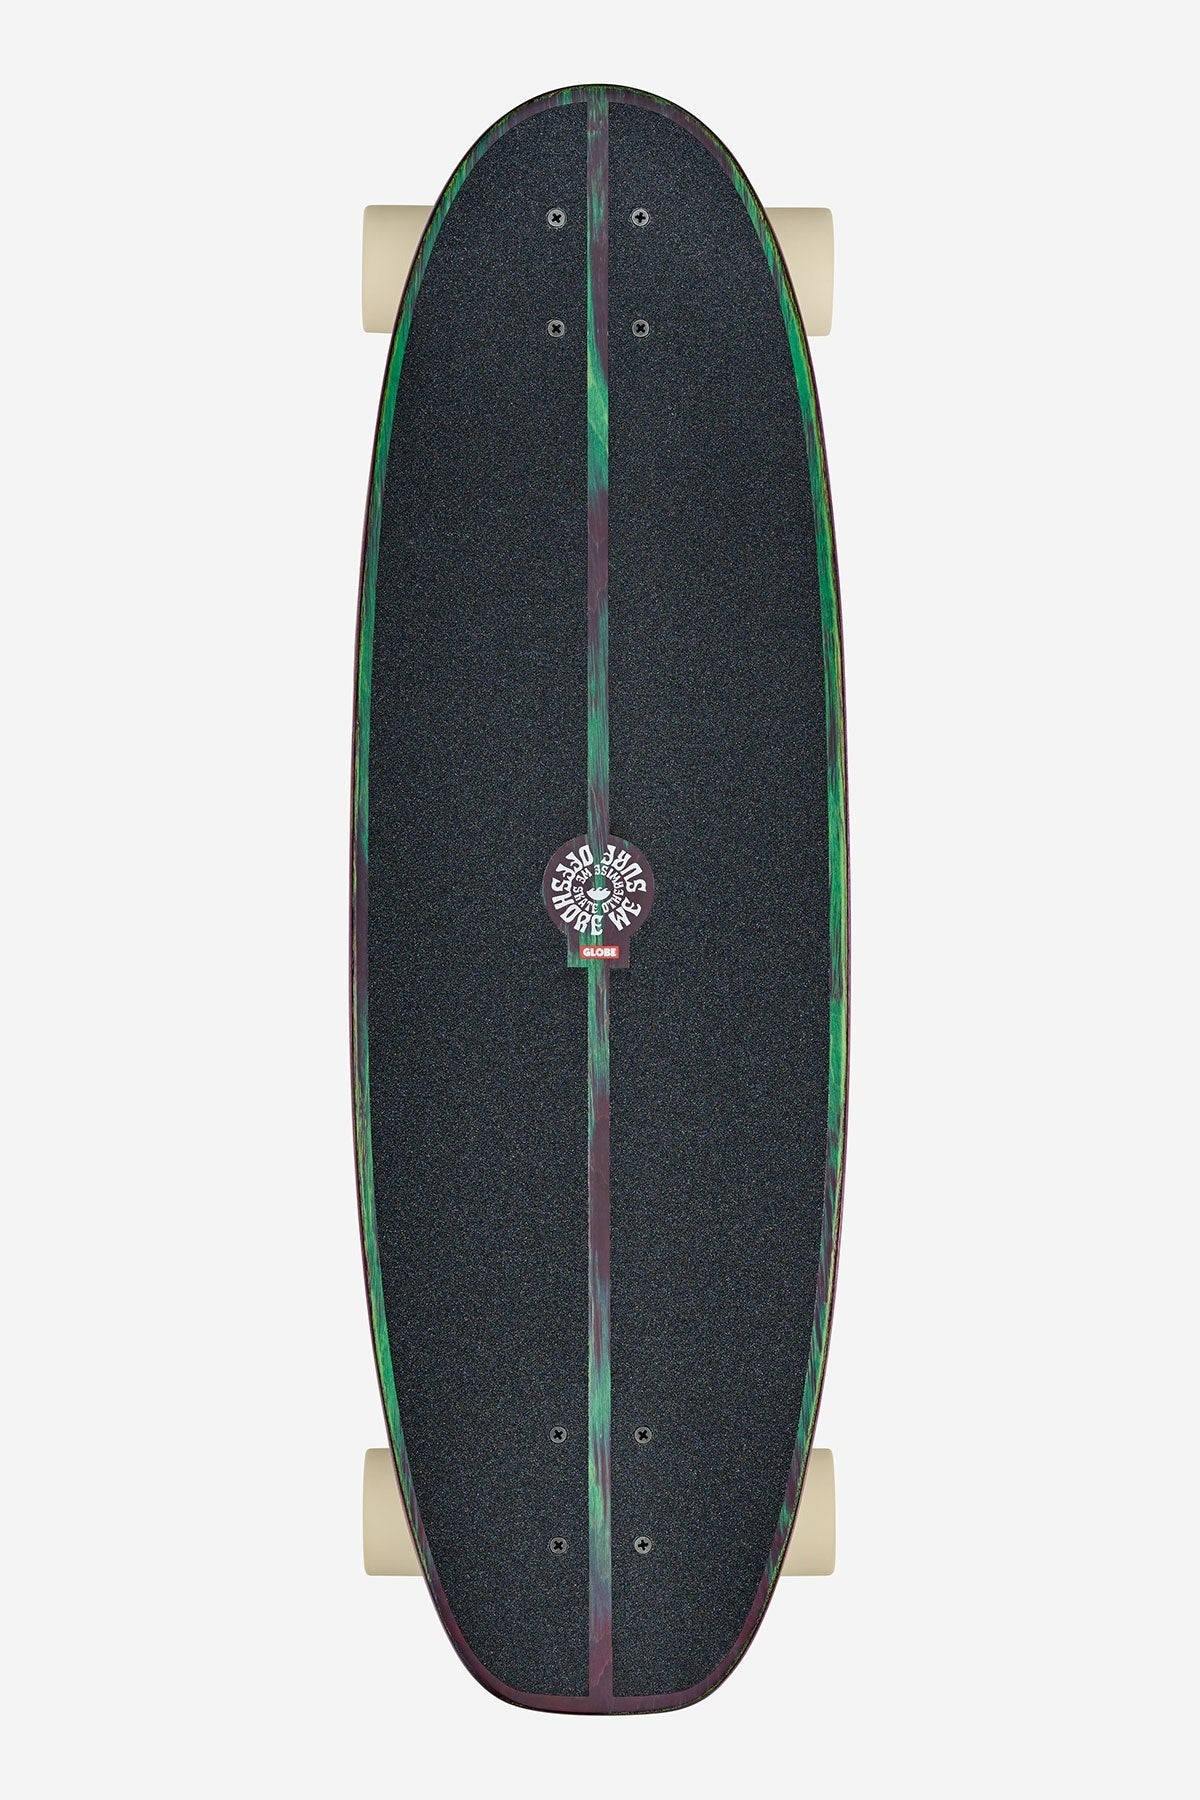 Costa 31" Surf/Skate Cruiser Skateboard - SS First Out